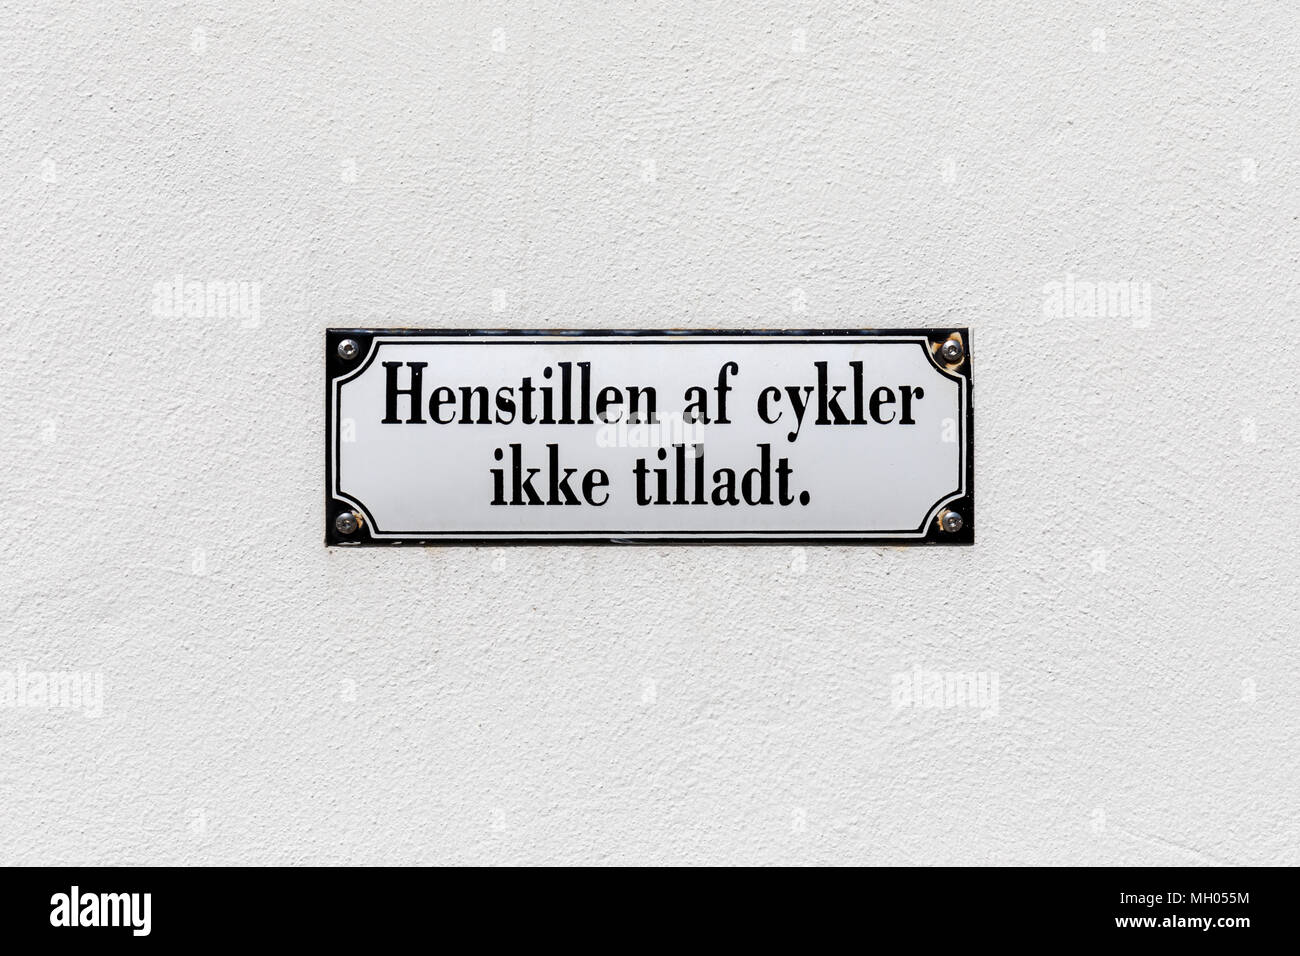 'Henstillen af cykler ikke tilladt' sign on a wall (Danish: 'No bicycle parking') Stock Photo